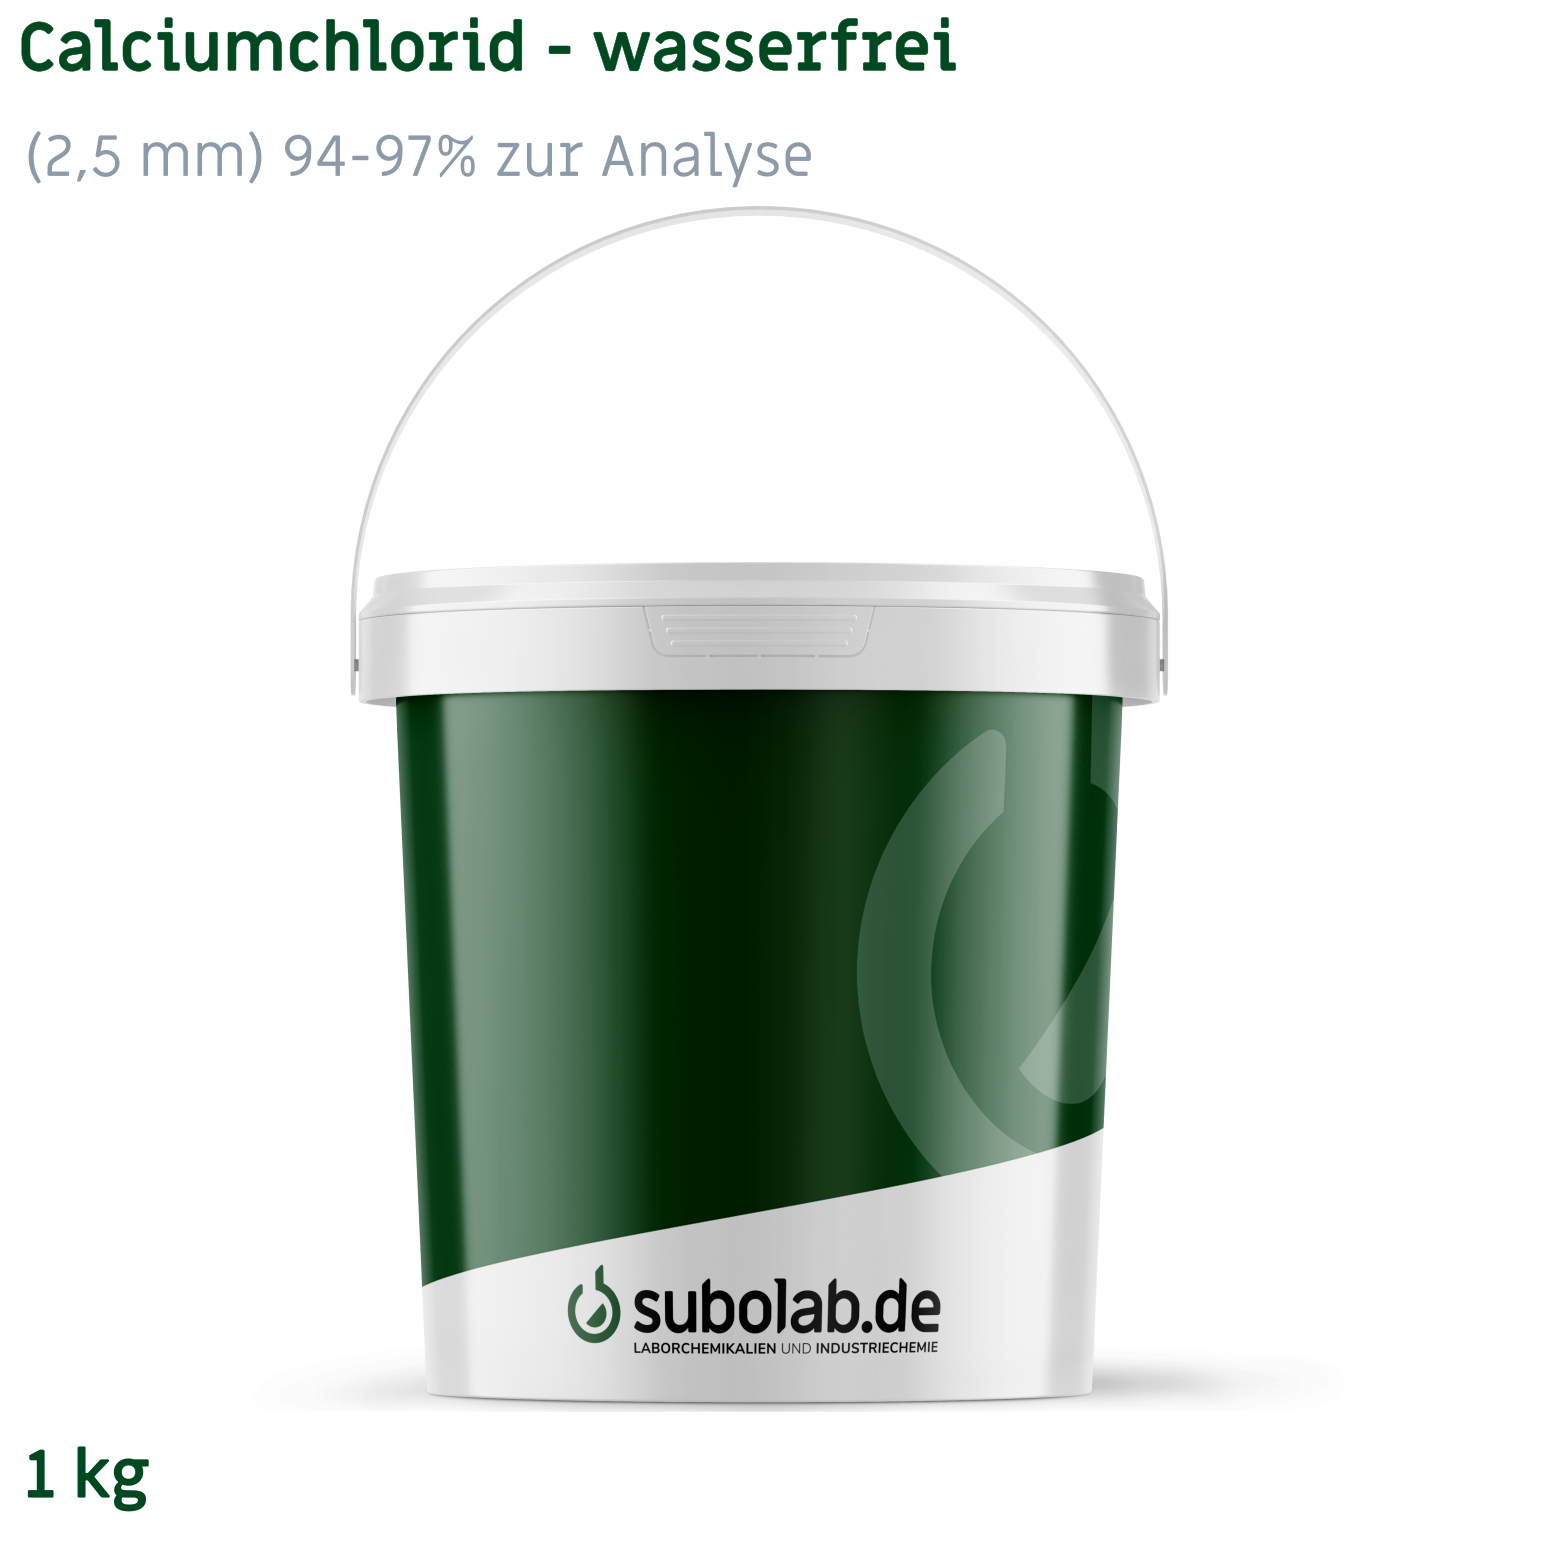 Bild von Calciumchlorid - wasserfrei gekörnt (2,5 mm) 94-97% zur Analyse (1 kg)